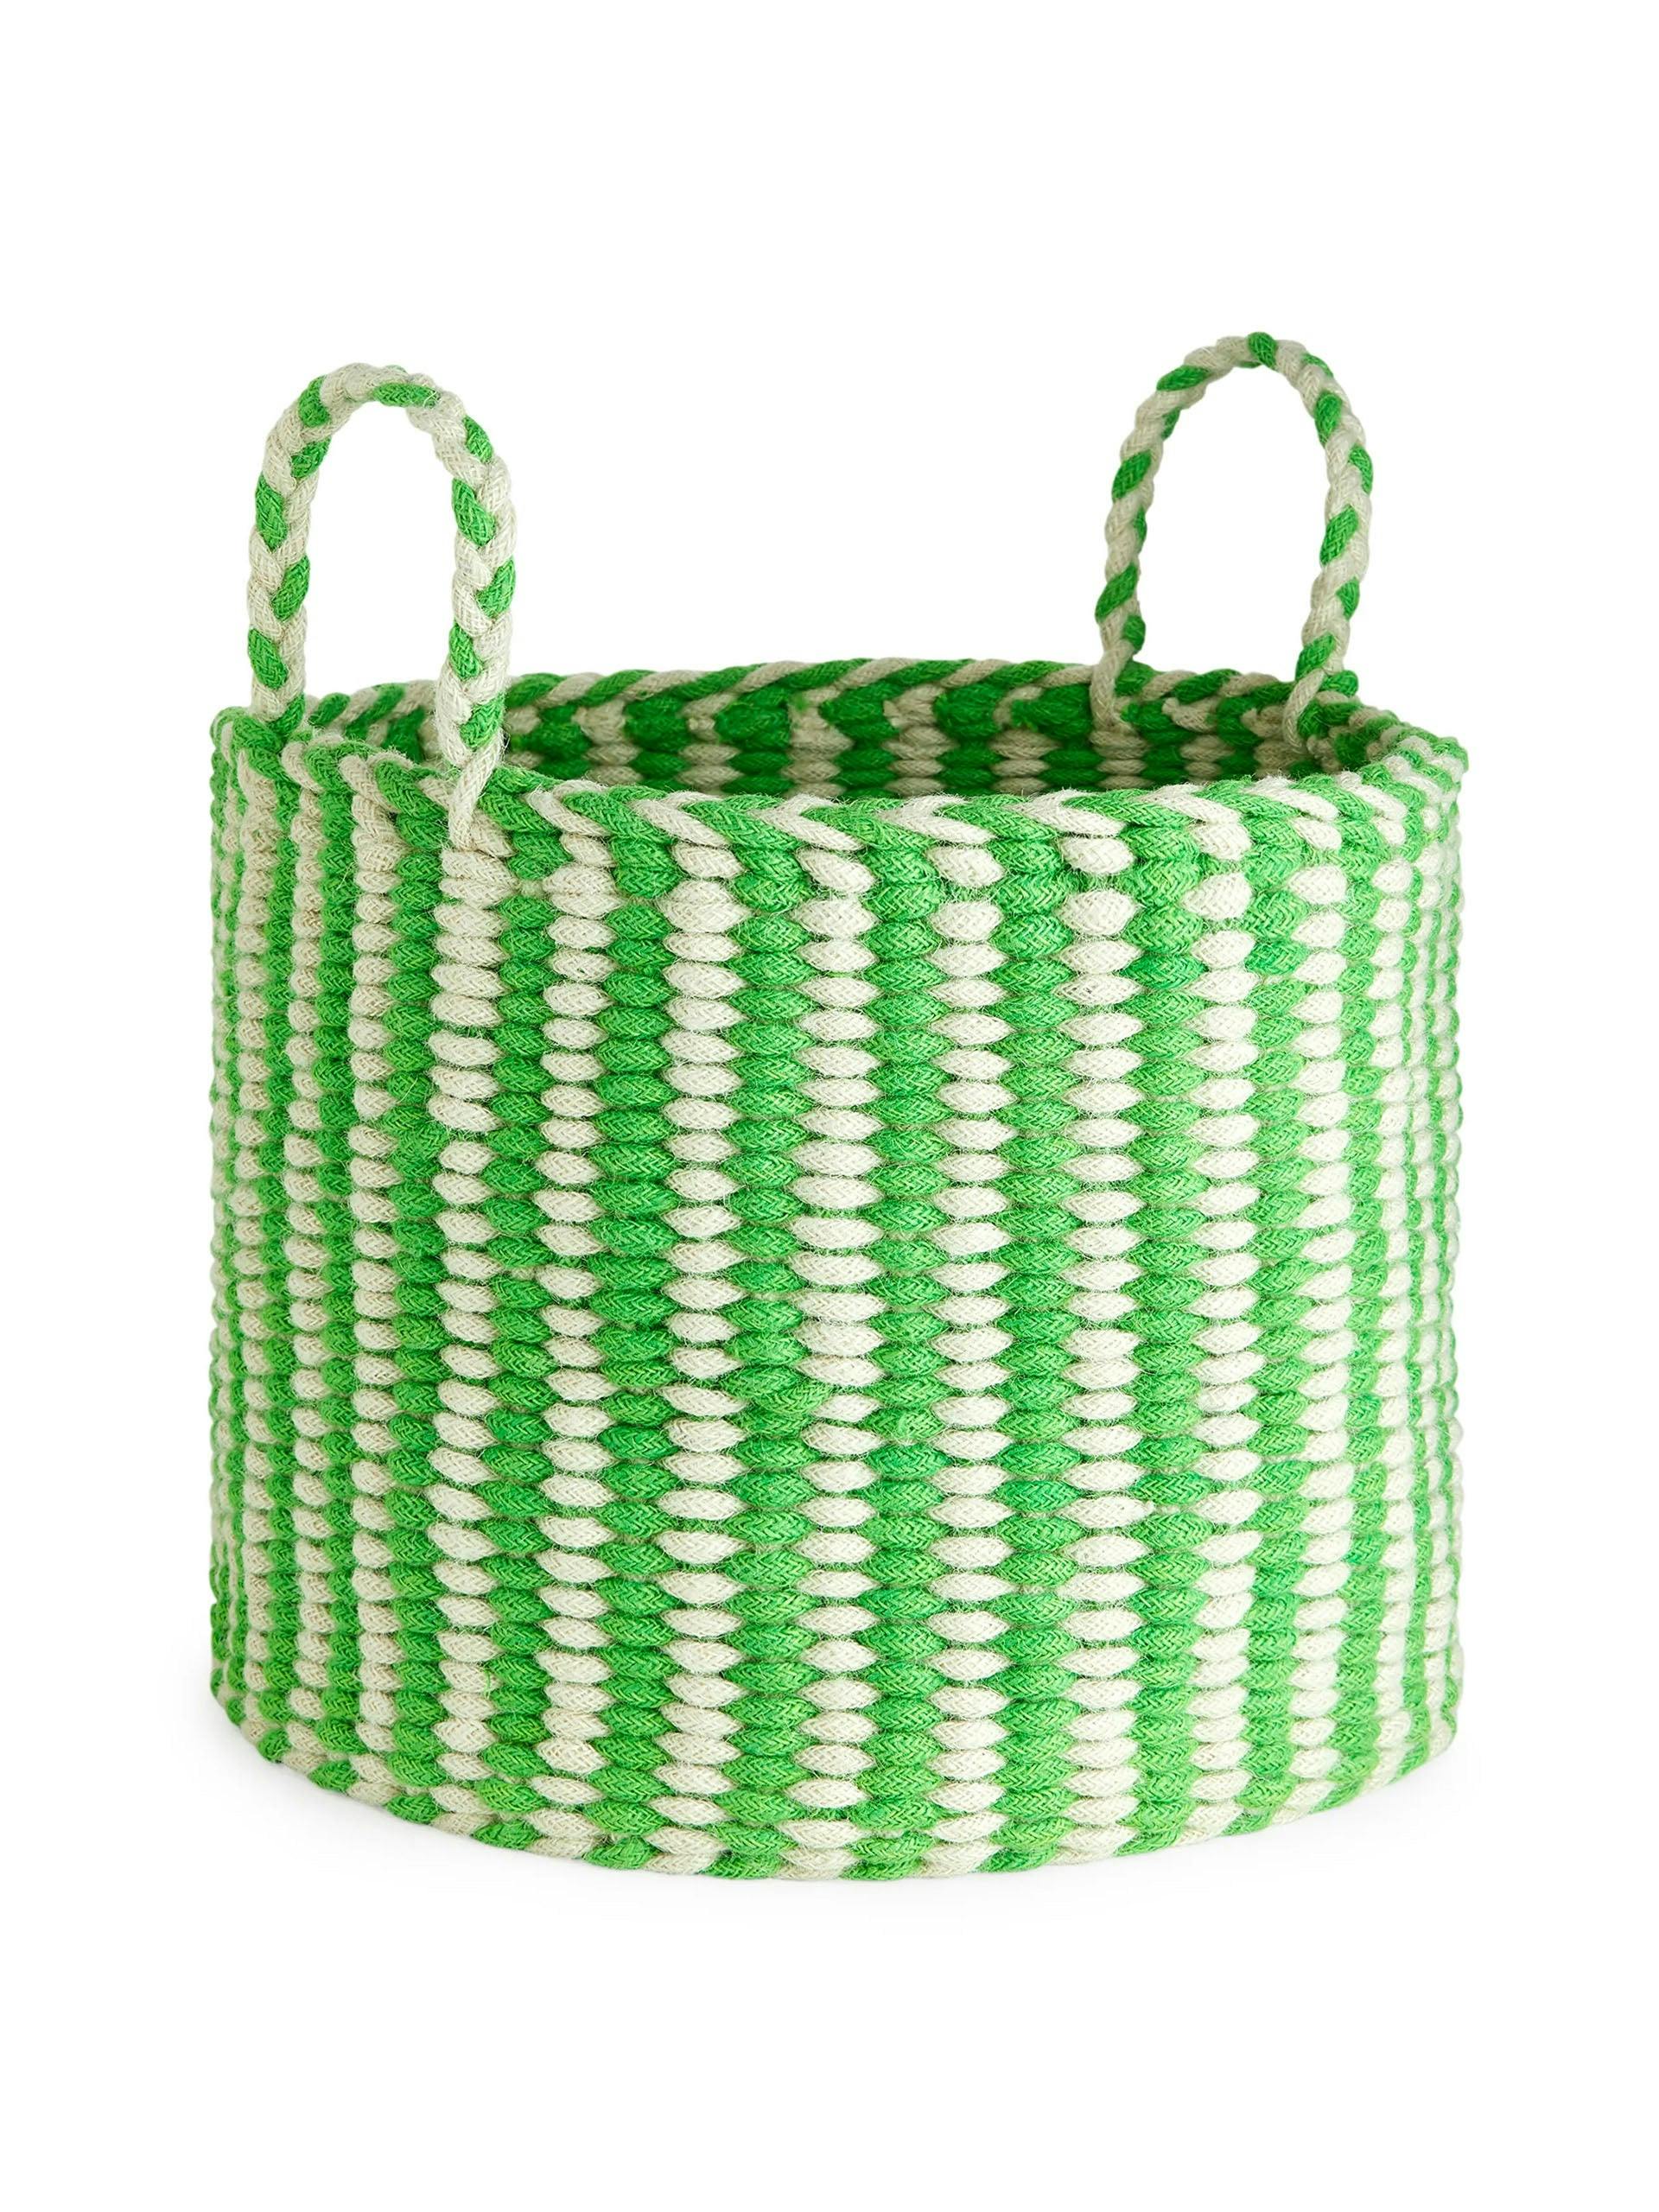 Green and cream storage basket